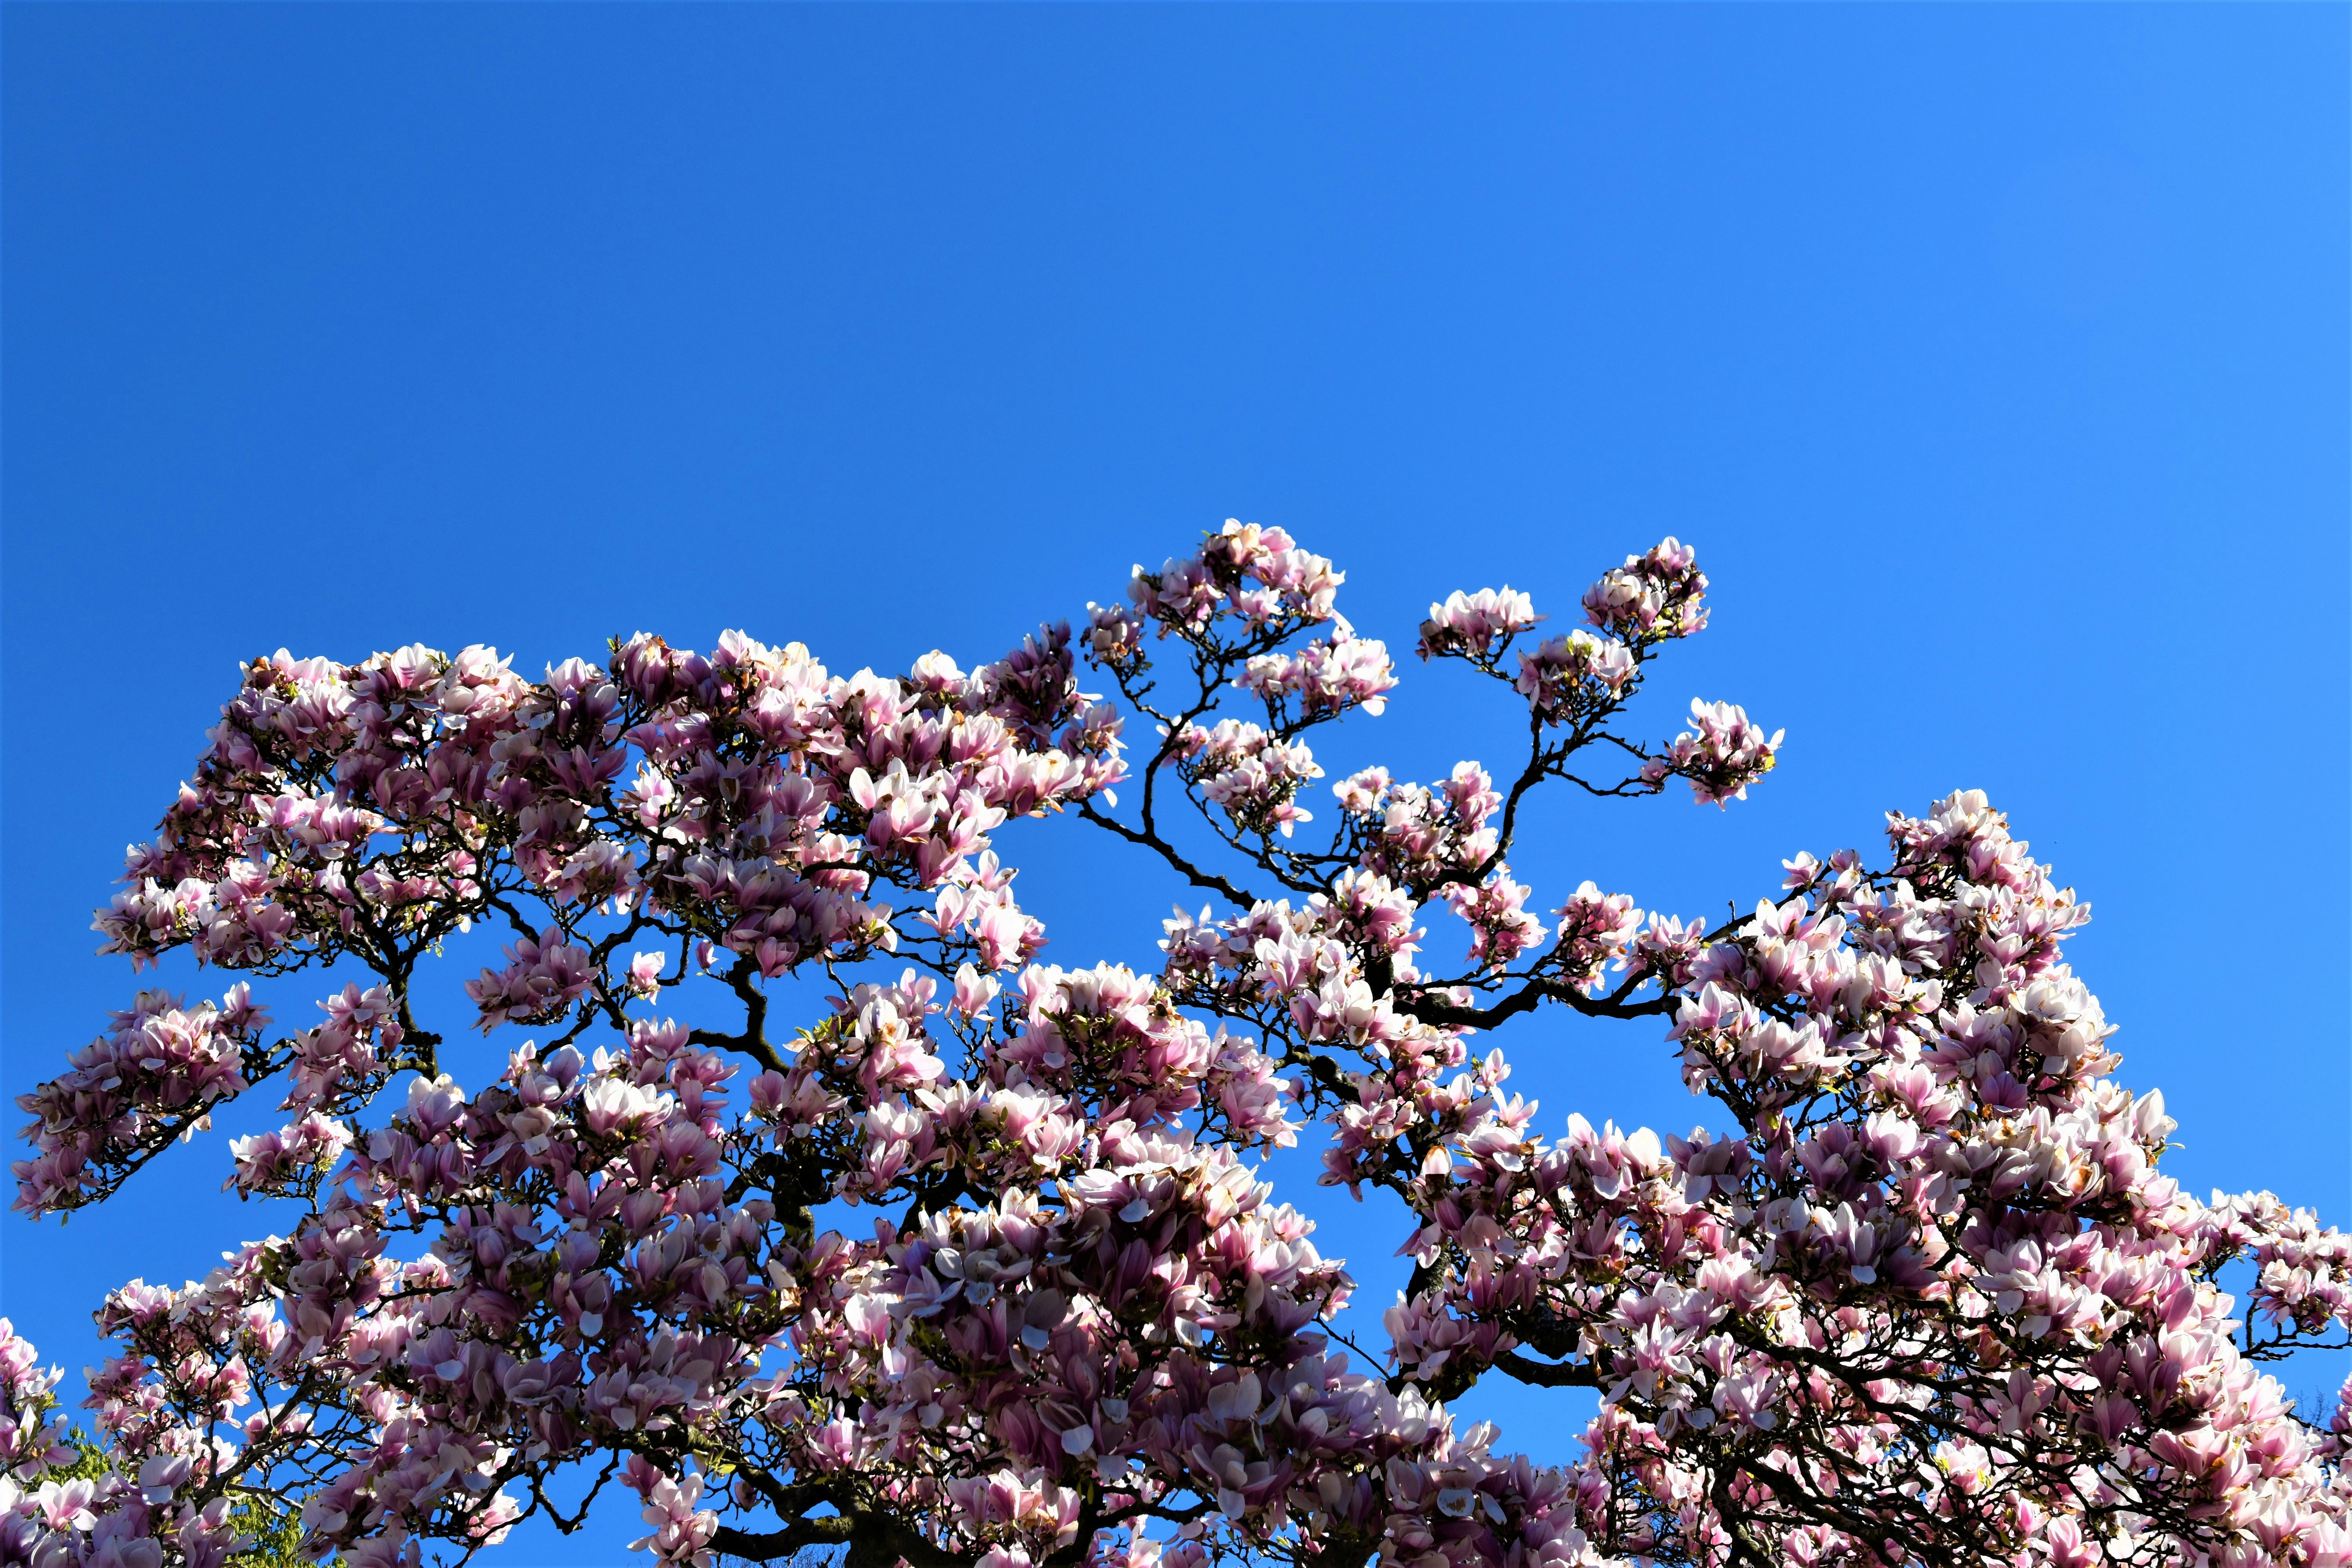 white cherry blossom under blue sky during daytime